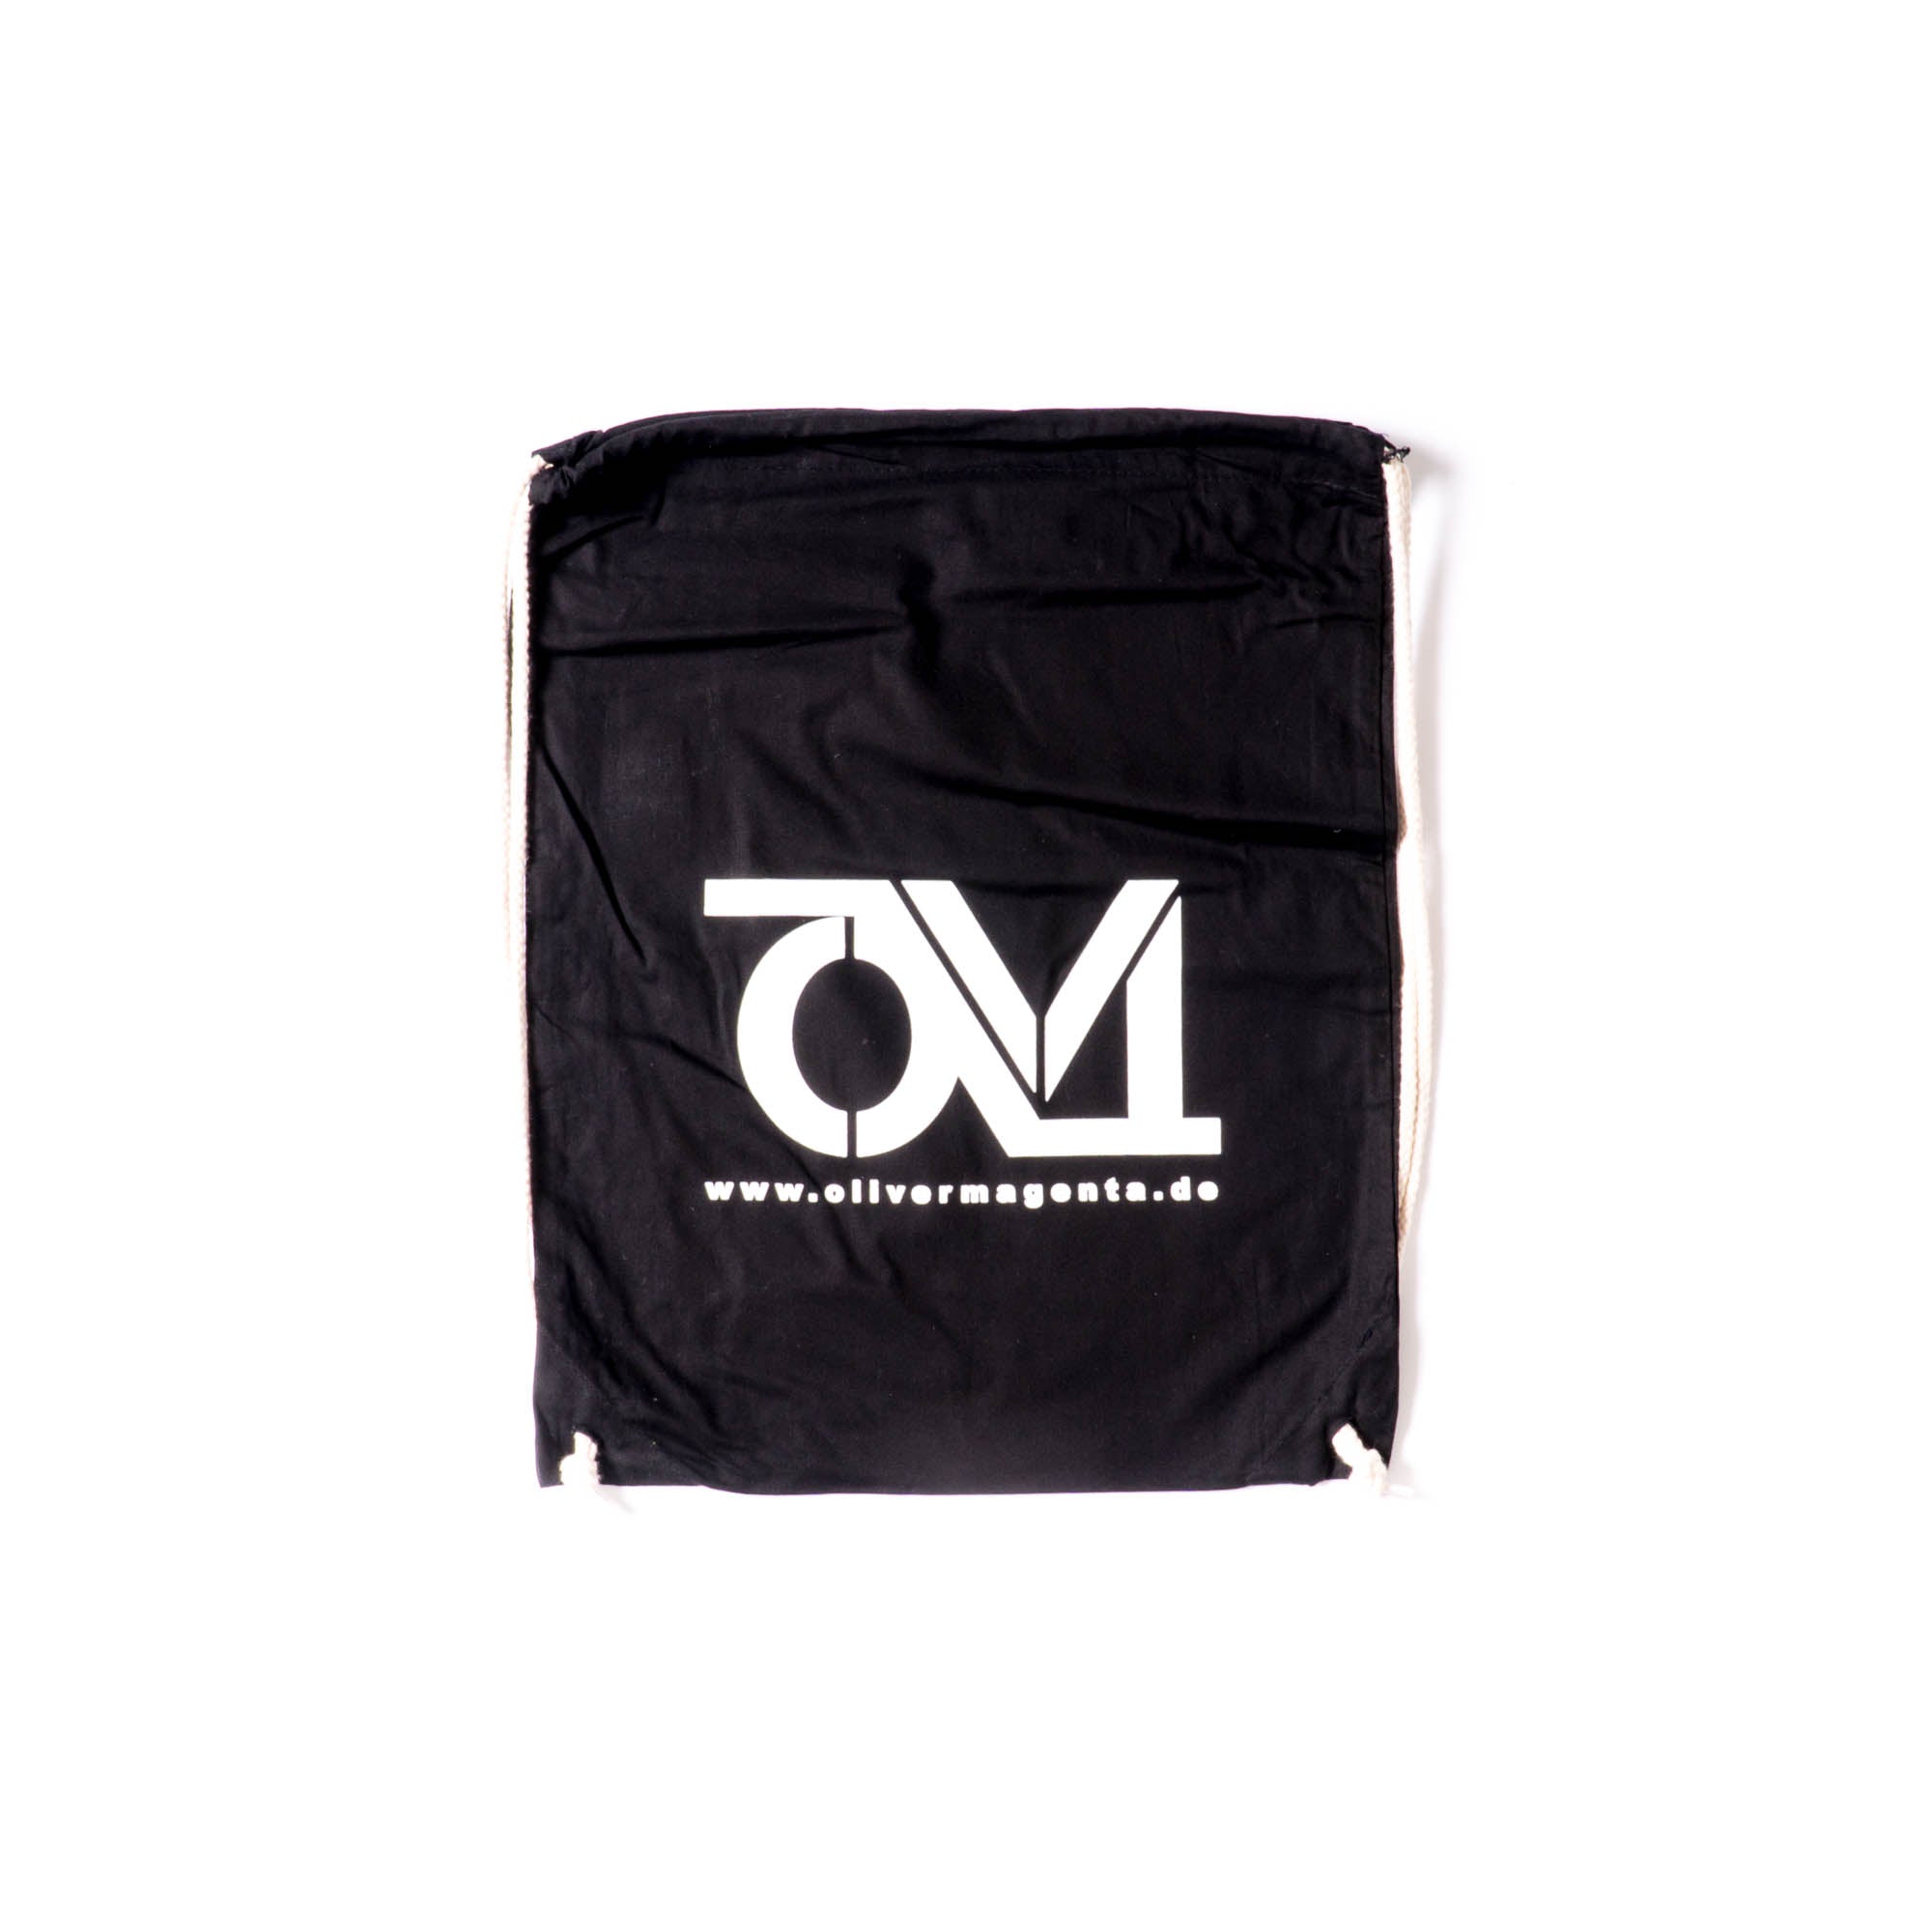 Oliver Magenta - OM Logo Gymbag